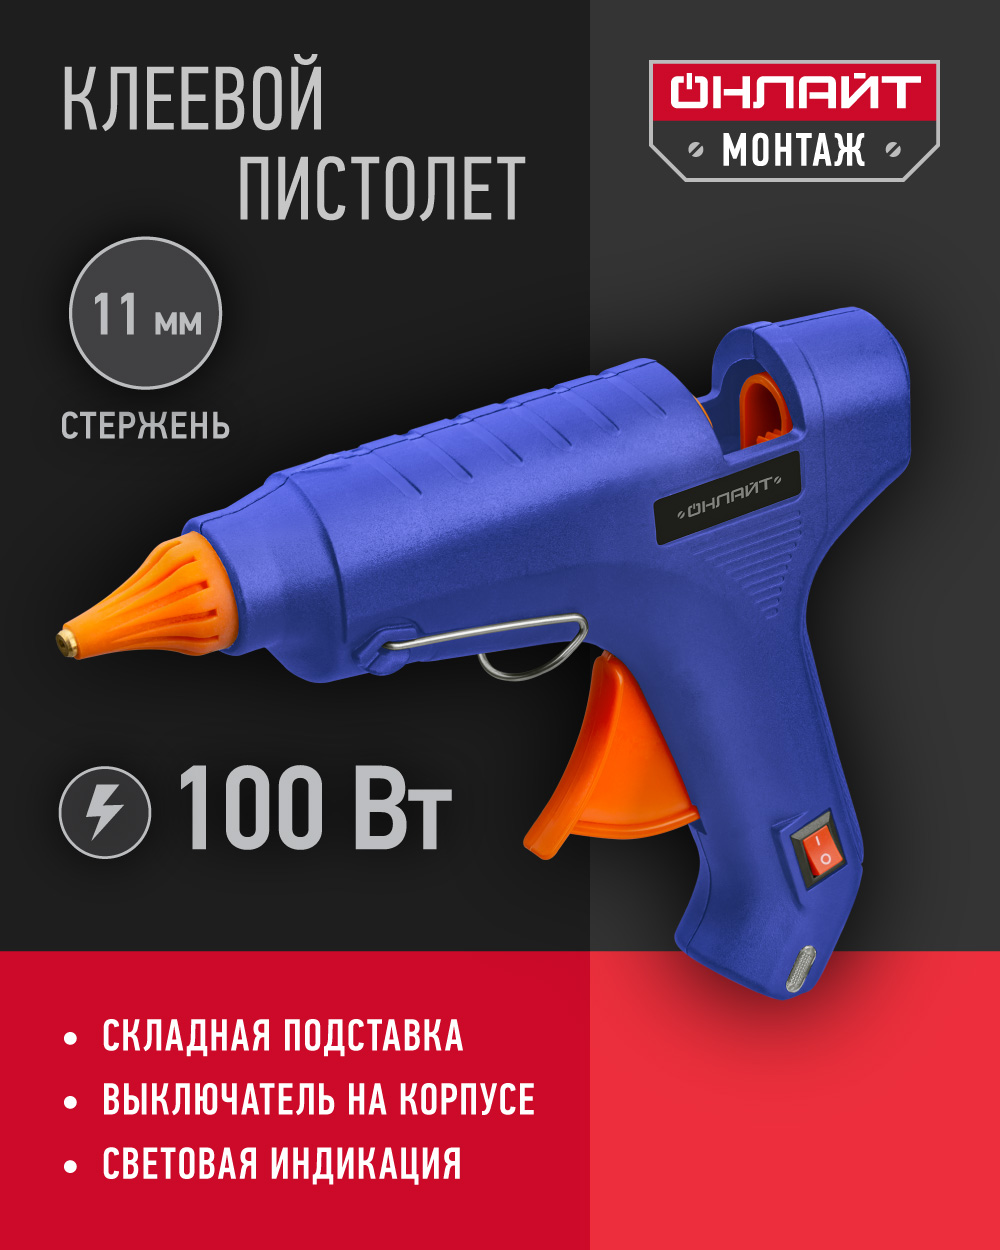 Клеевой пистолет профессиональный ОНЛАЙТ 90 088, 100 Вт, 11 мм, синий клеевой пистолет онлайт ote pk01 20w 7 мм